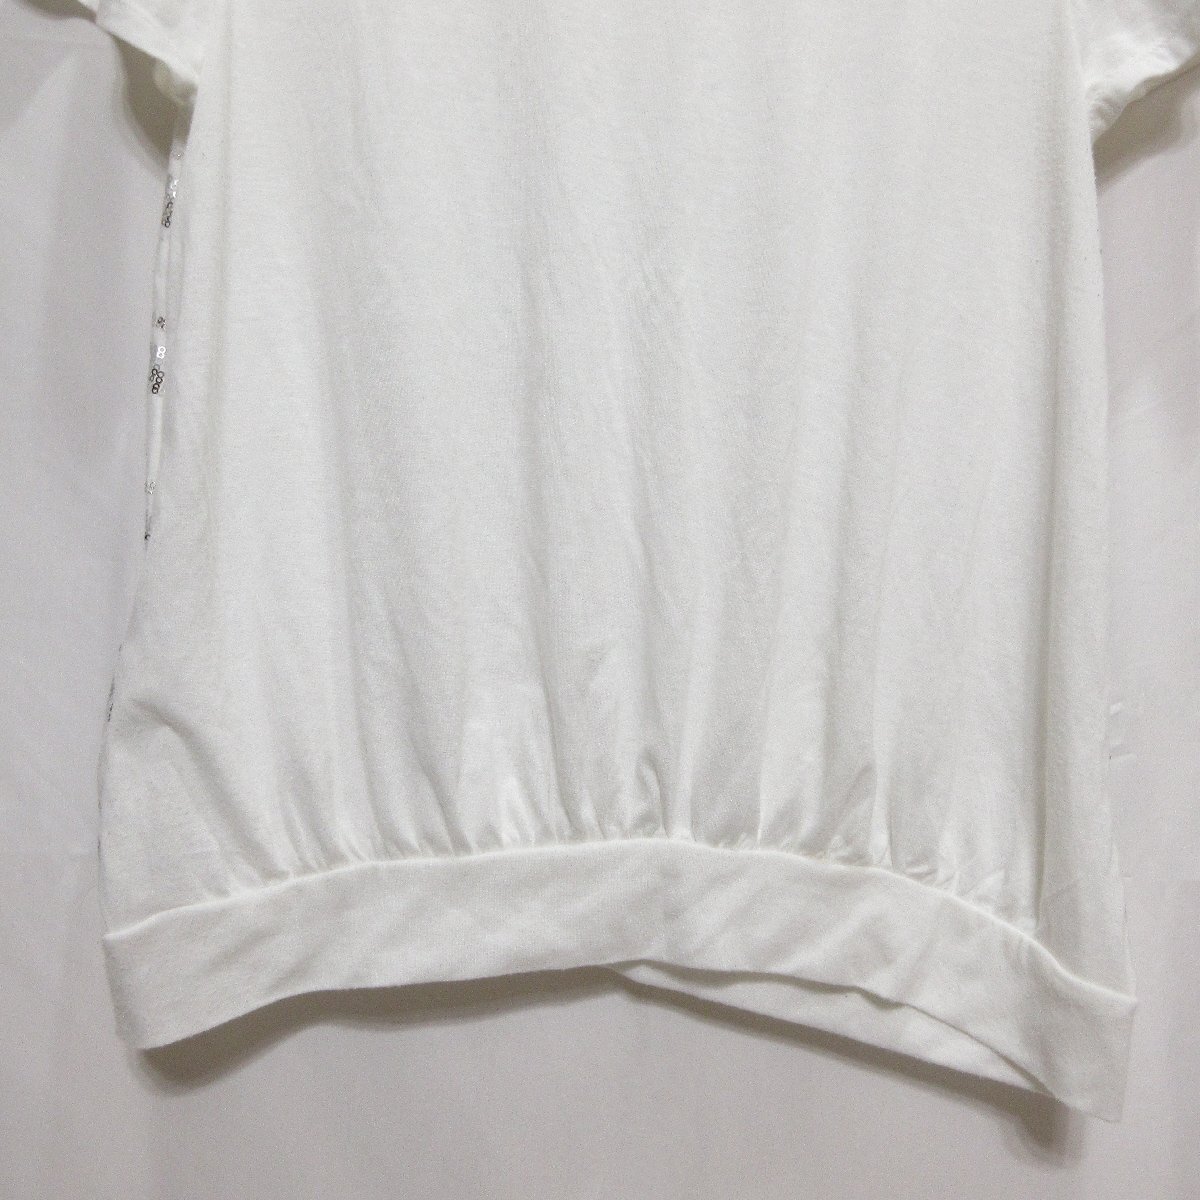 ◆MICHEL KLEIN スパンコール ボーダー柄 半袖 Tシャツ(ホワイト) サイズ42◆USED_画像7